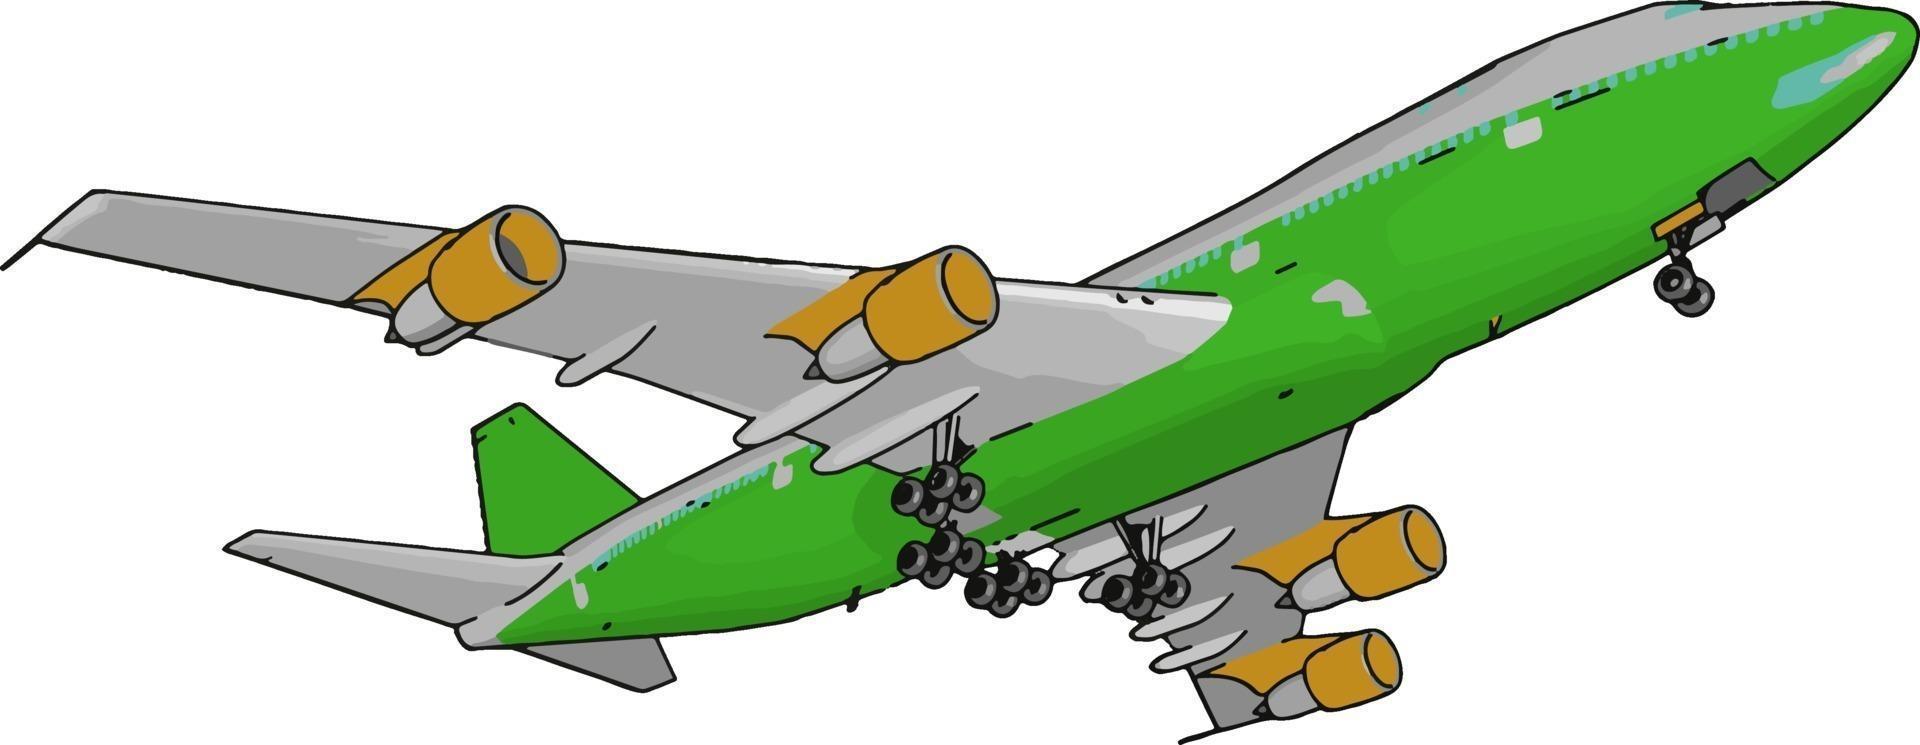 Green passenger plane, illustration, vector on white background.